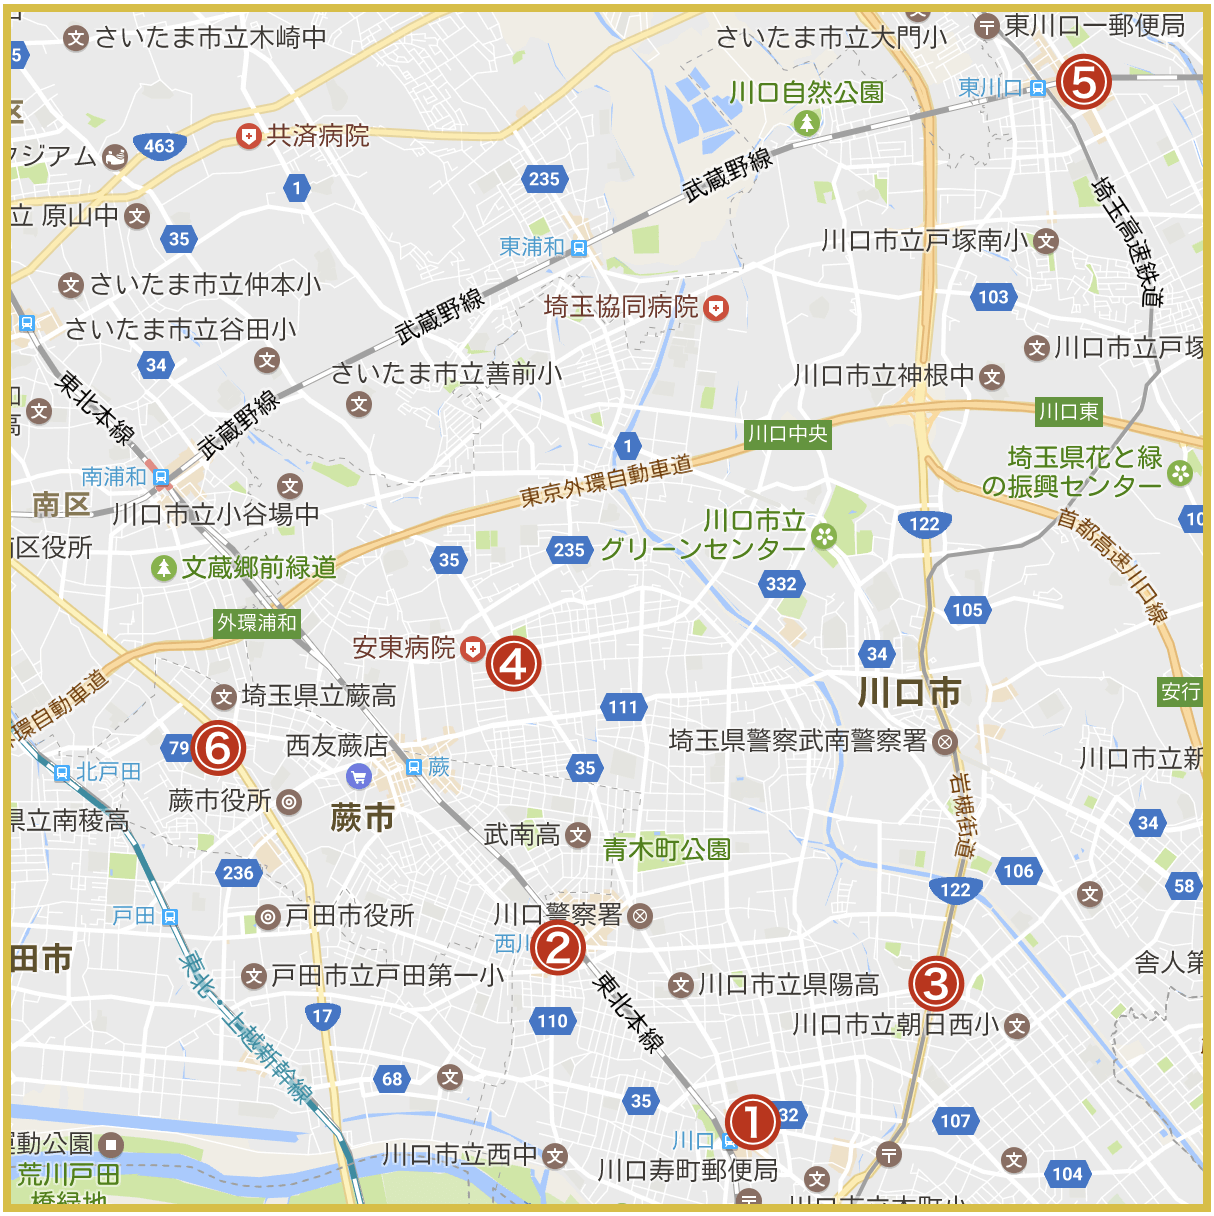 埼玉県南部地域にあるアイフル店舗・ATMの位置